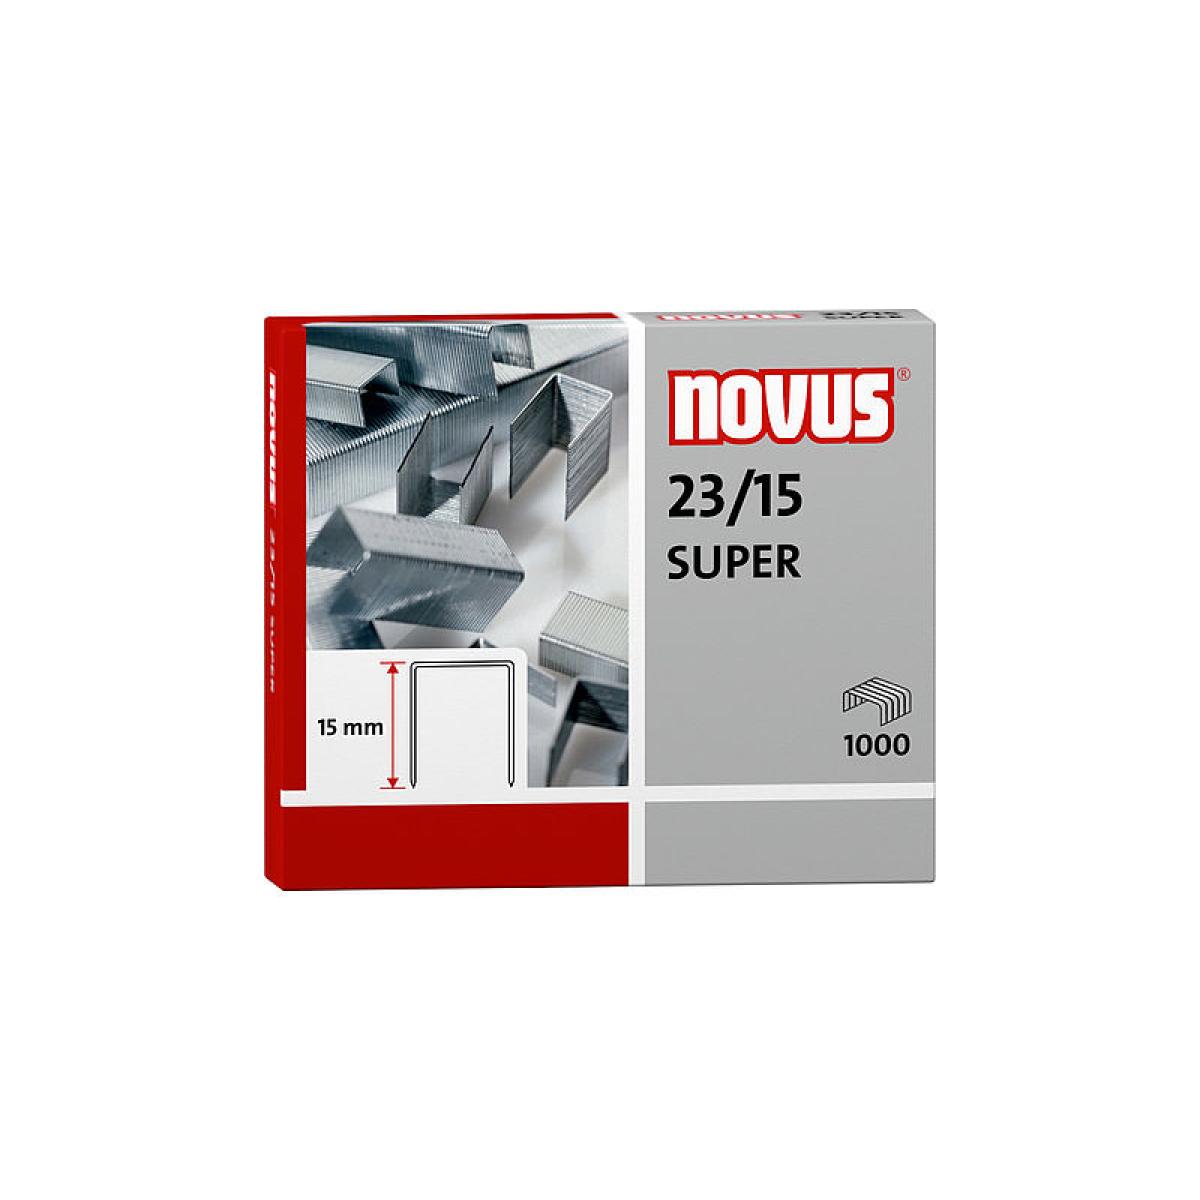 Novus 23/15 Super Staples - Pack of 1000